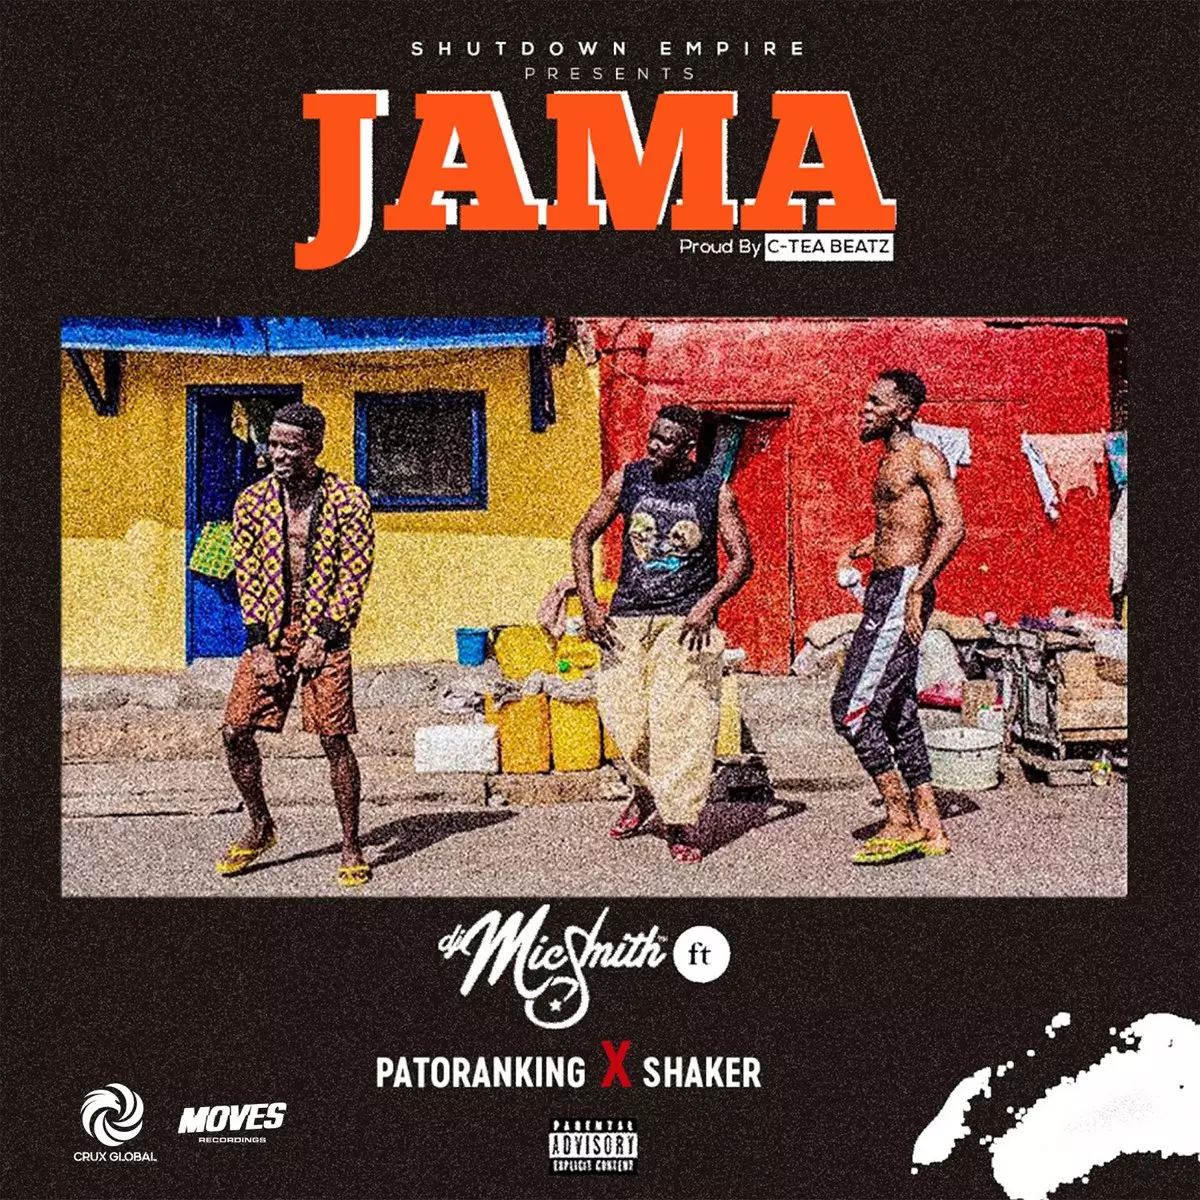 Jama - Single by DJ Mic Smith, Patoranking & Shaker on Apple Music